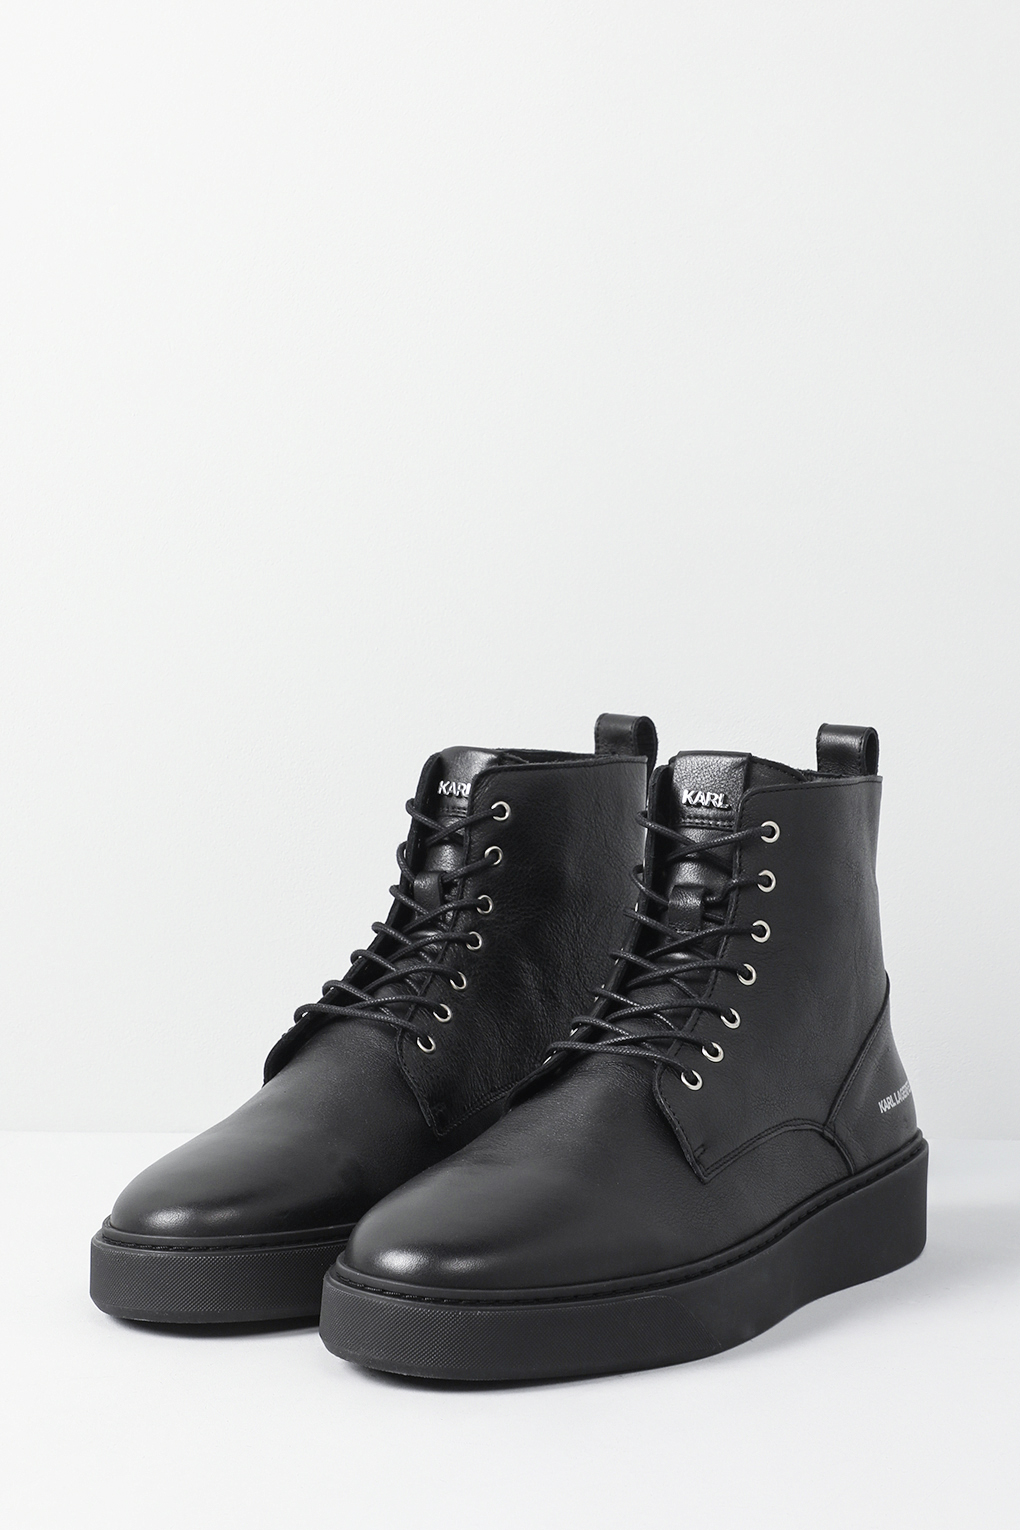 Ботинки мужские Karl Lagerfeld 855003-533470 черные 44 EU